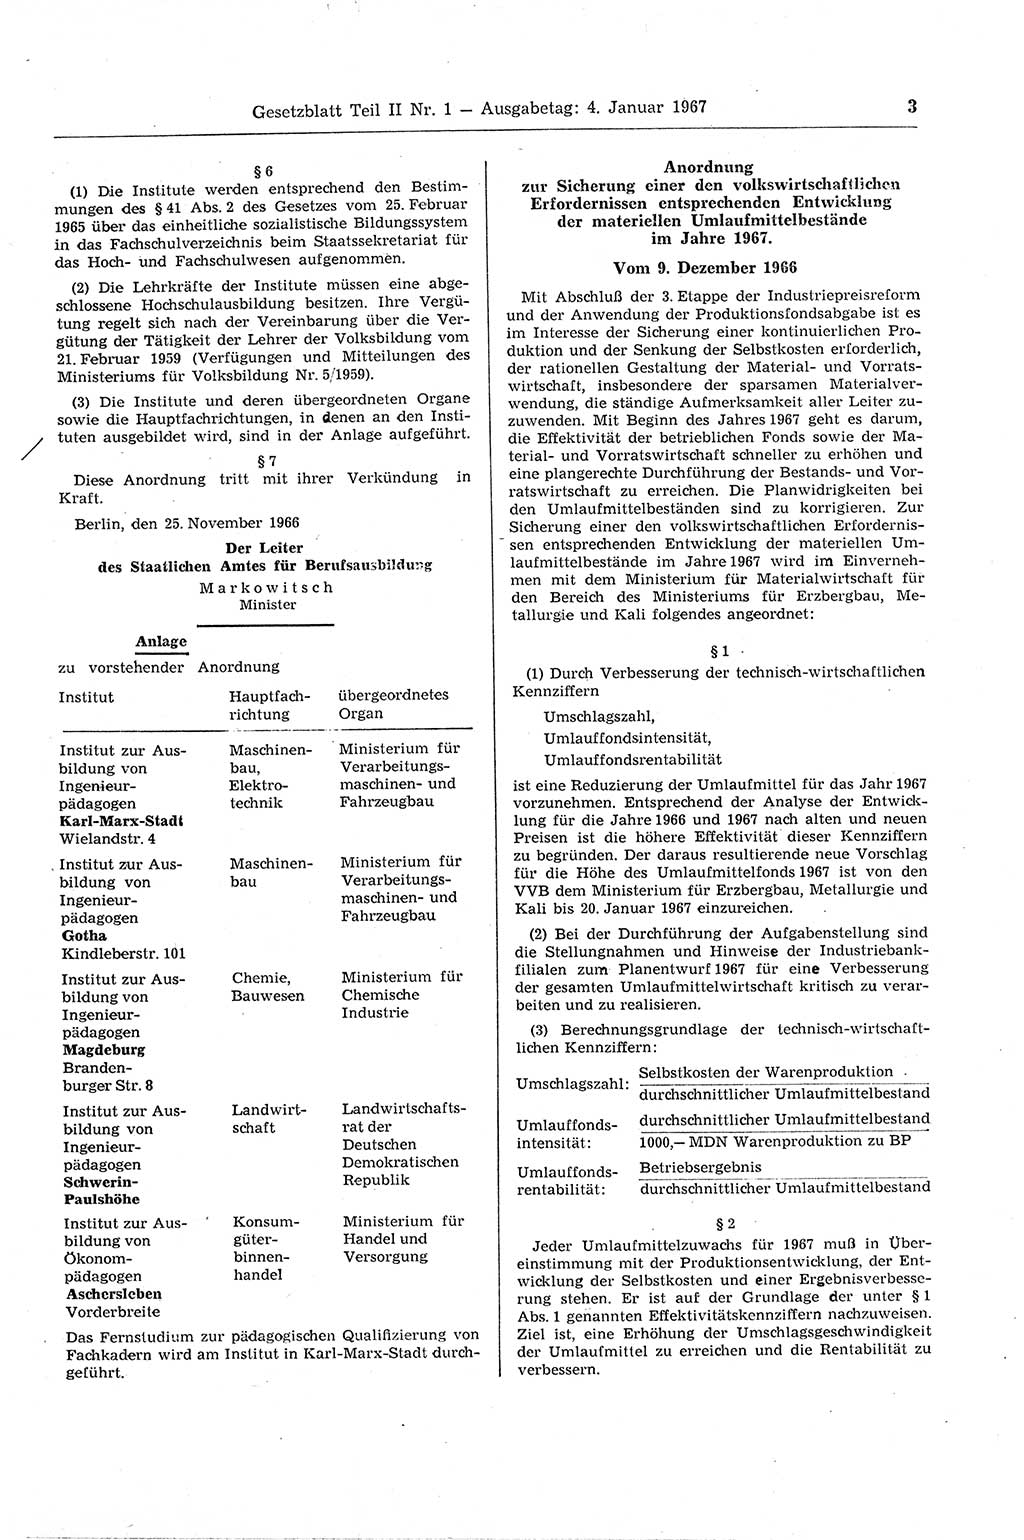 Gesetzblatt (GBl.) der Deutschen Demokratischen Republik (DDR) Teil ⅠⅠ 1967, Seite 3 (GBl. DDR ⅠⅠ 1967, S. 3)